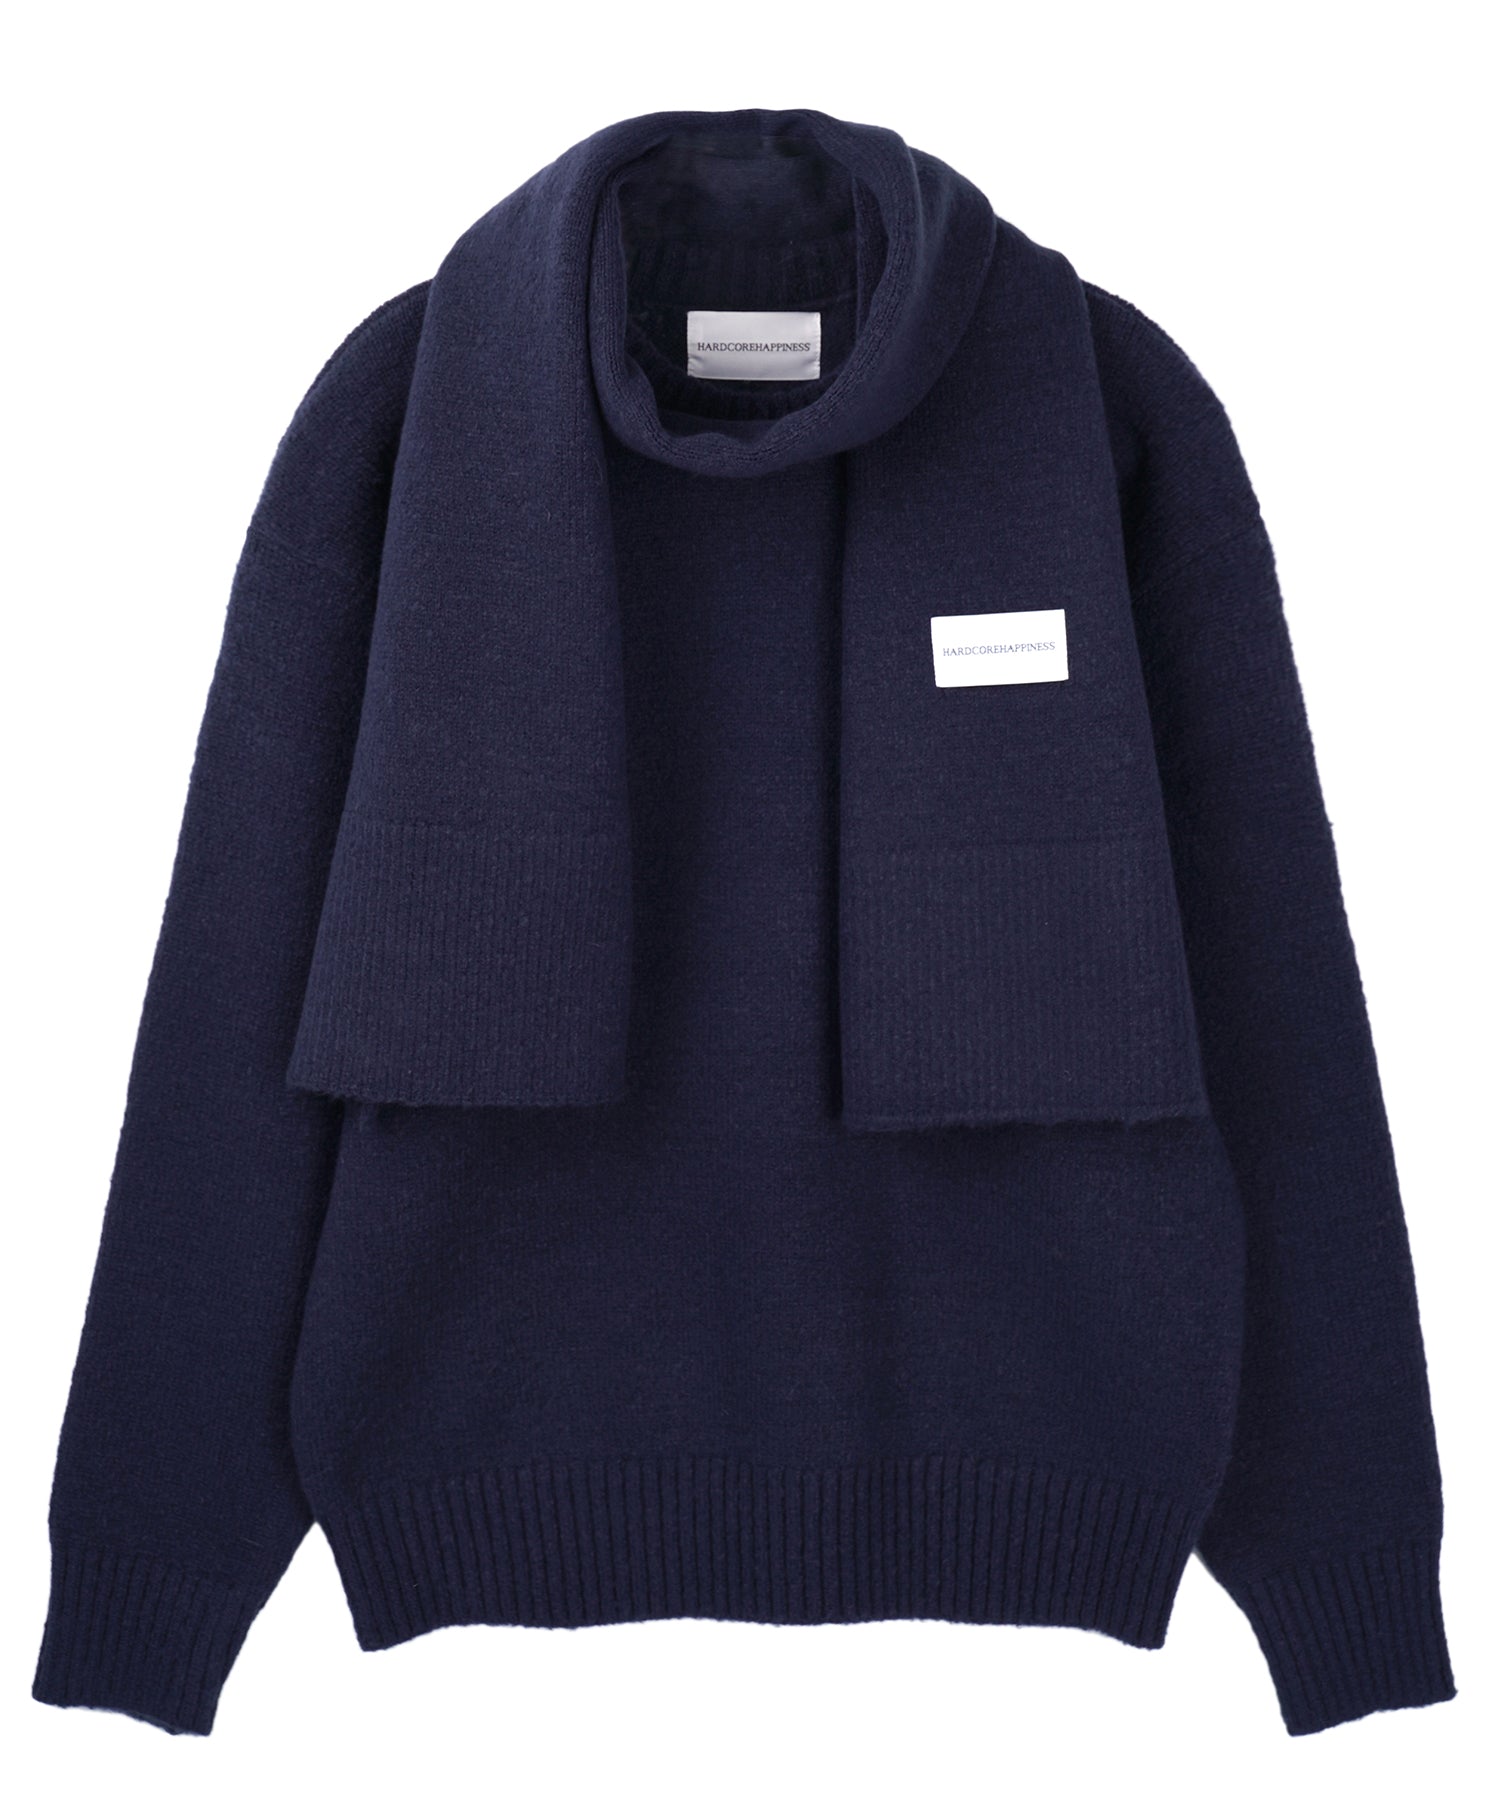 Pullover muffler knit set_navy